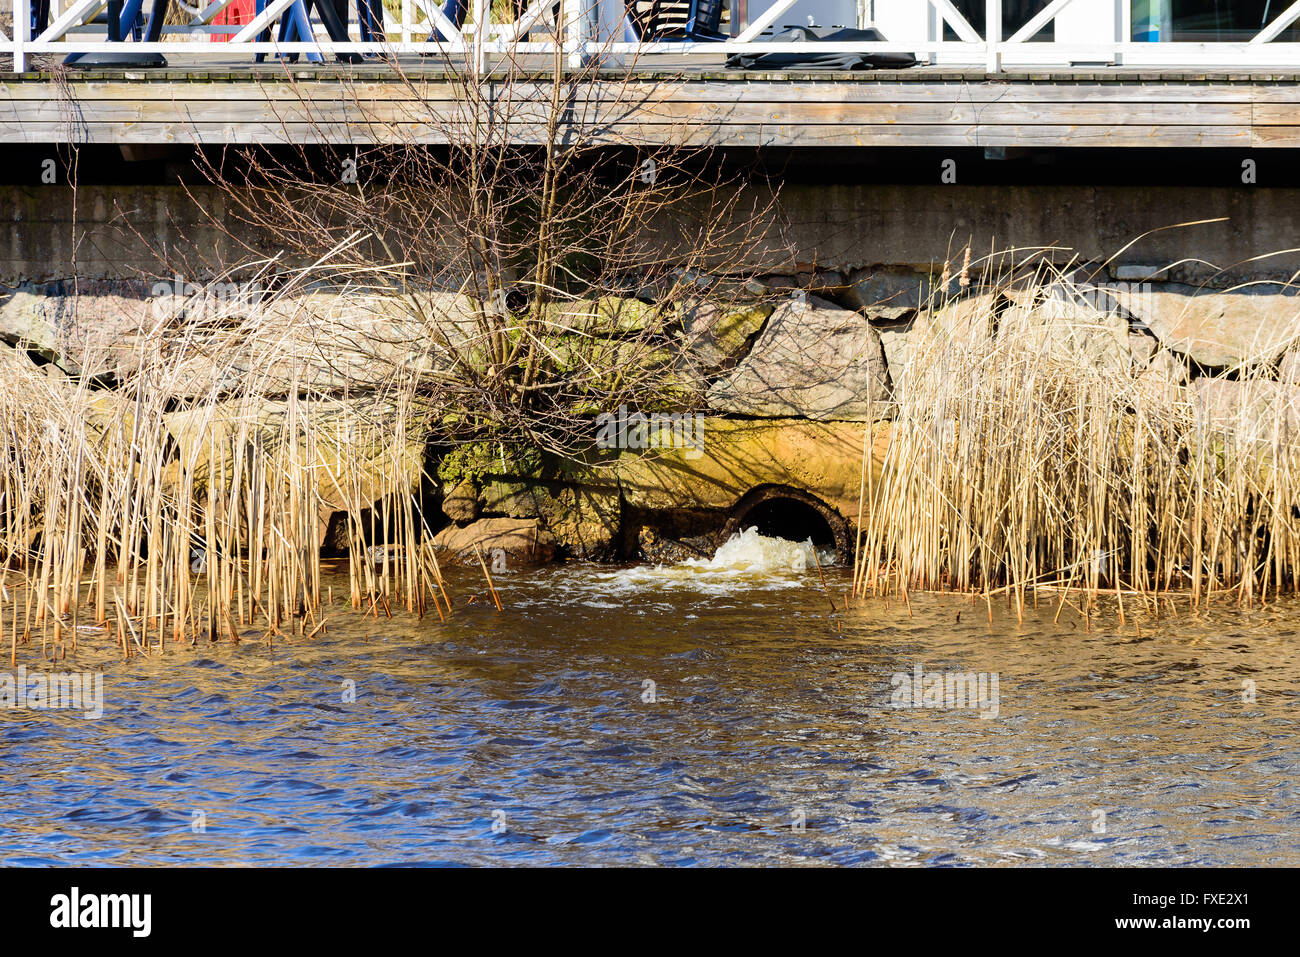 Sortie d'eaux pluviales dans une rivière avec des blocs de pierre et d'une partie d'une jetée ou d'un pont au-dessus. Banque D'Images